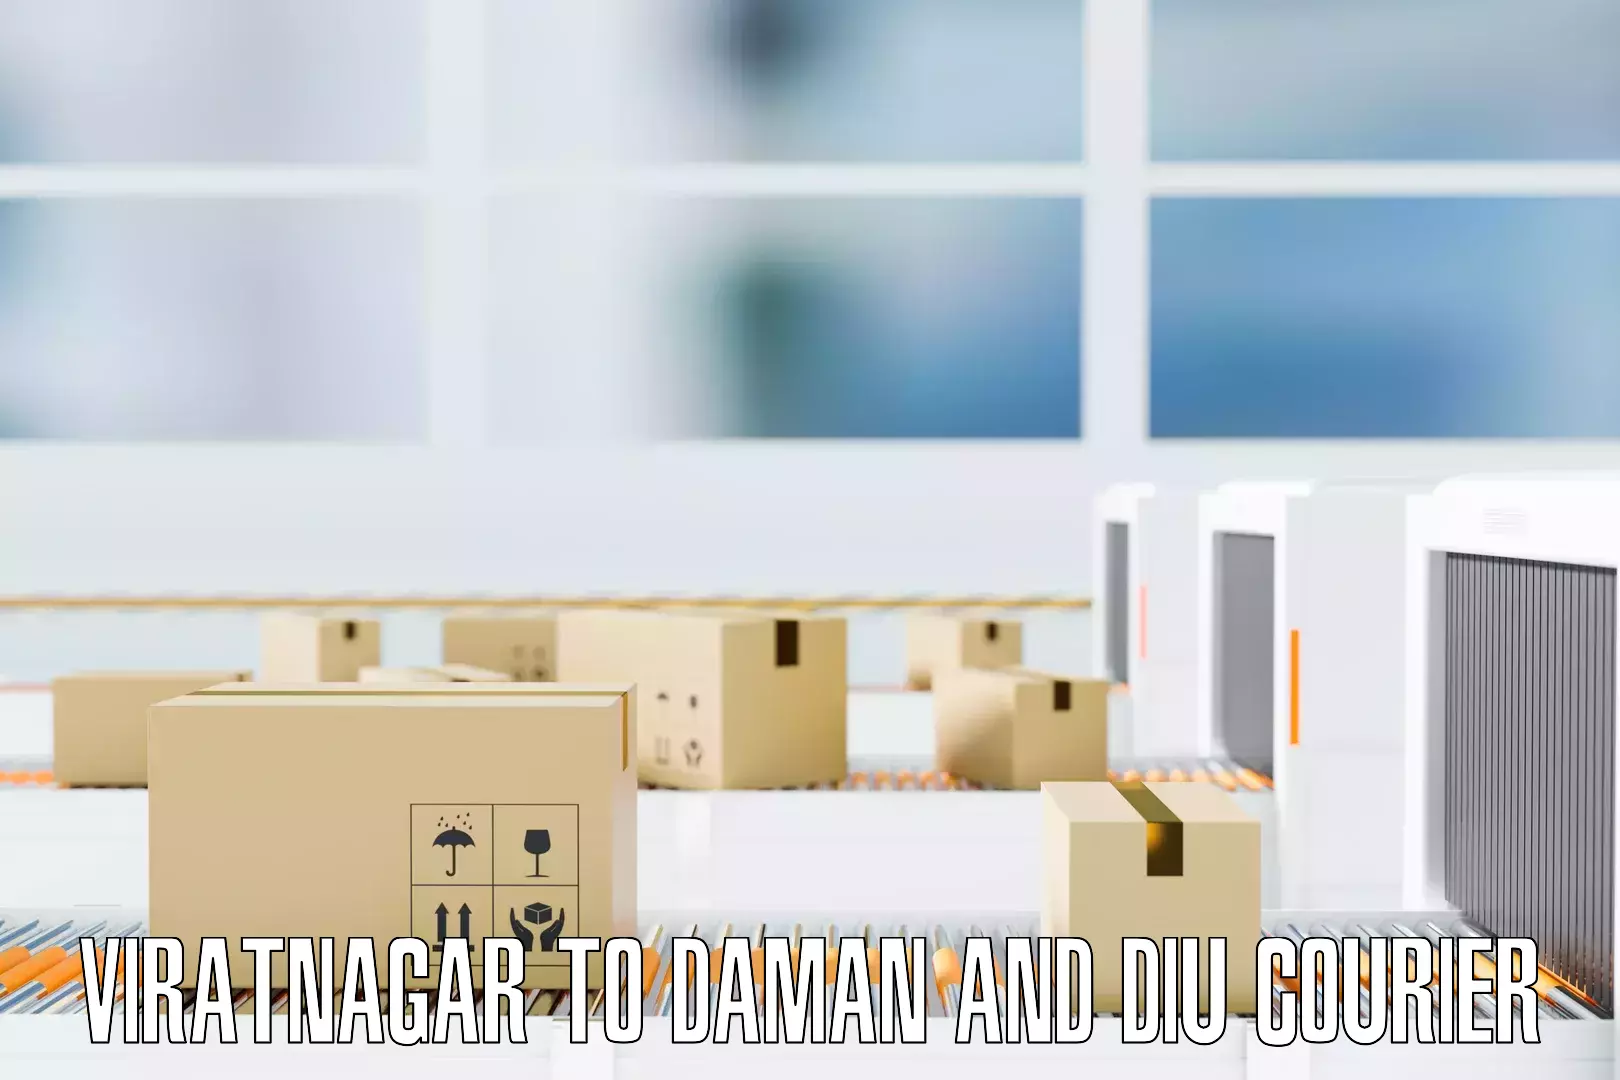 Professional movers Viratnagar to Daman and Diu